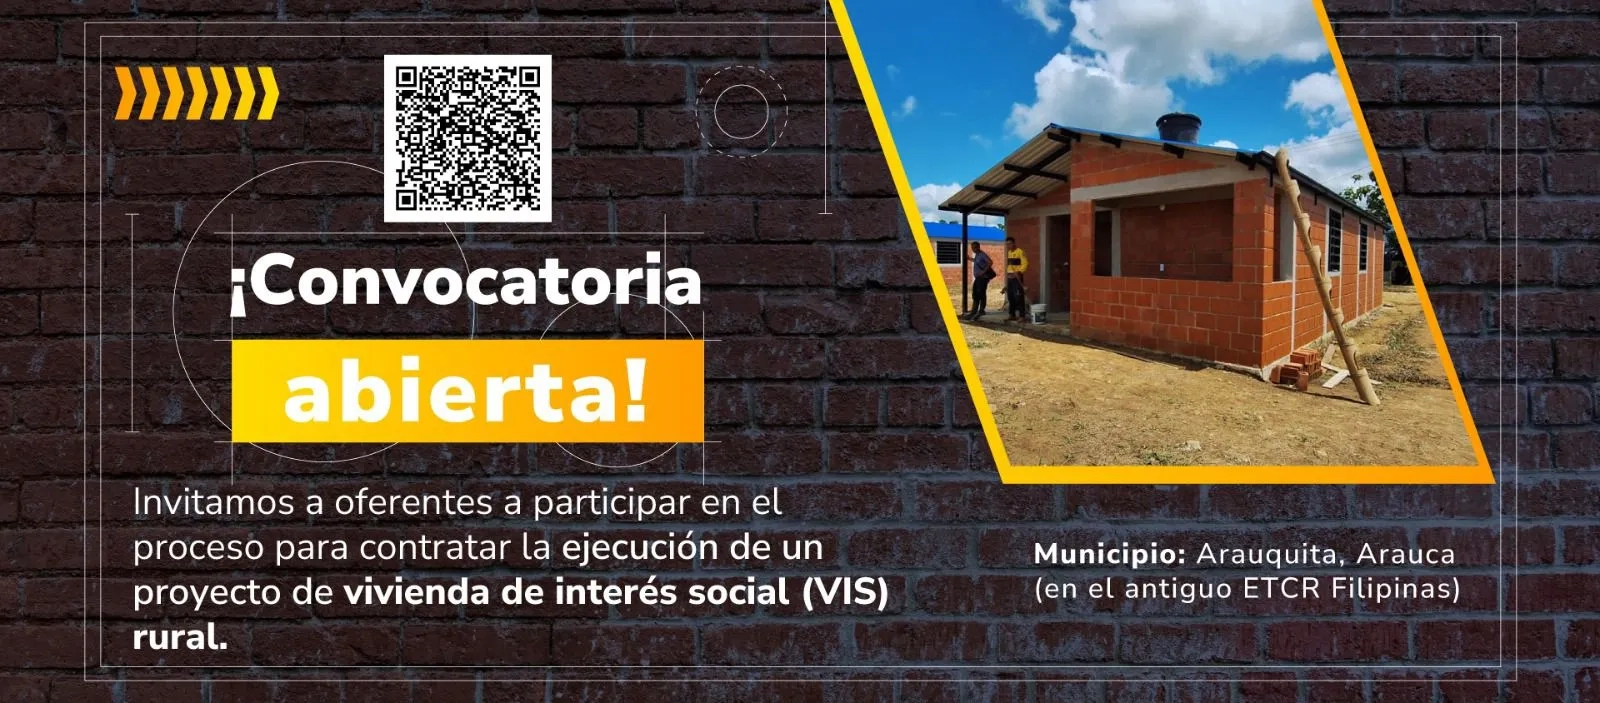 Convocatoria para ejecución de proyecto VIS rural en Arauquita.